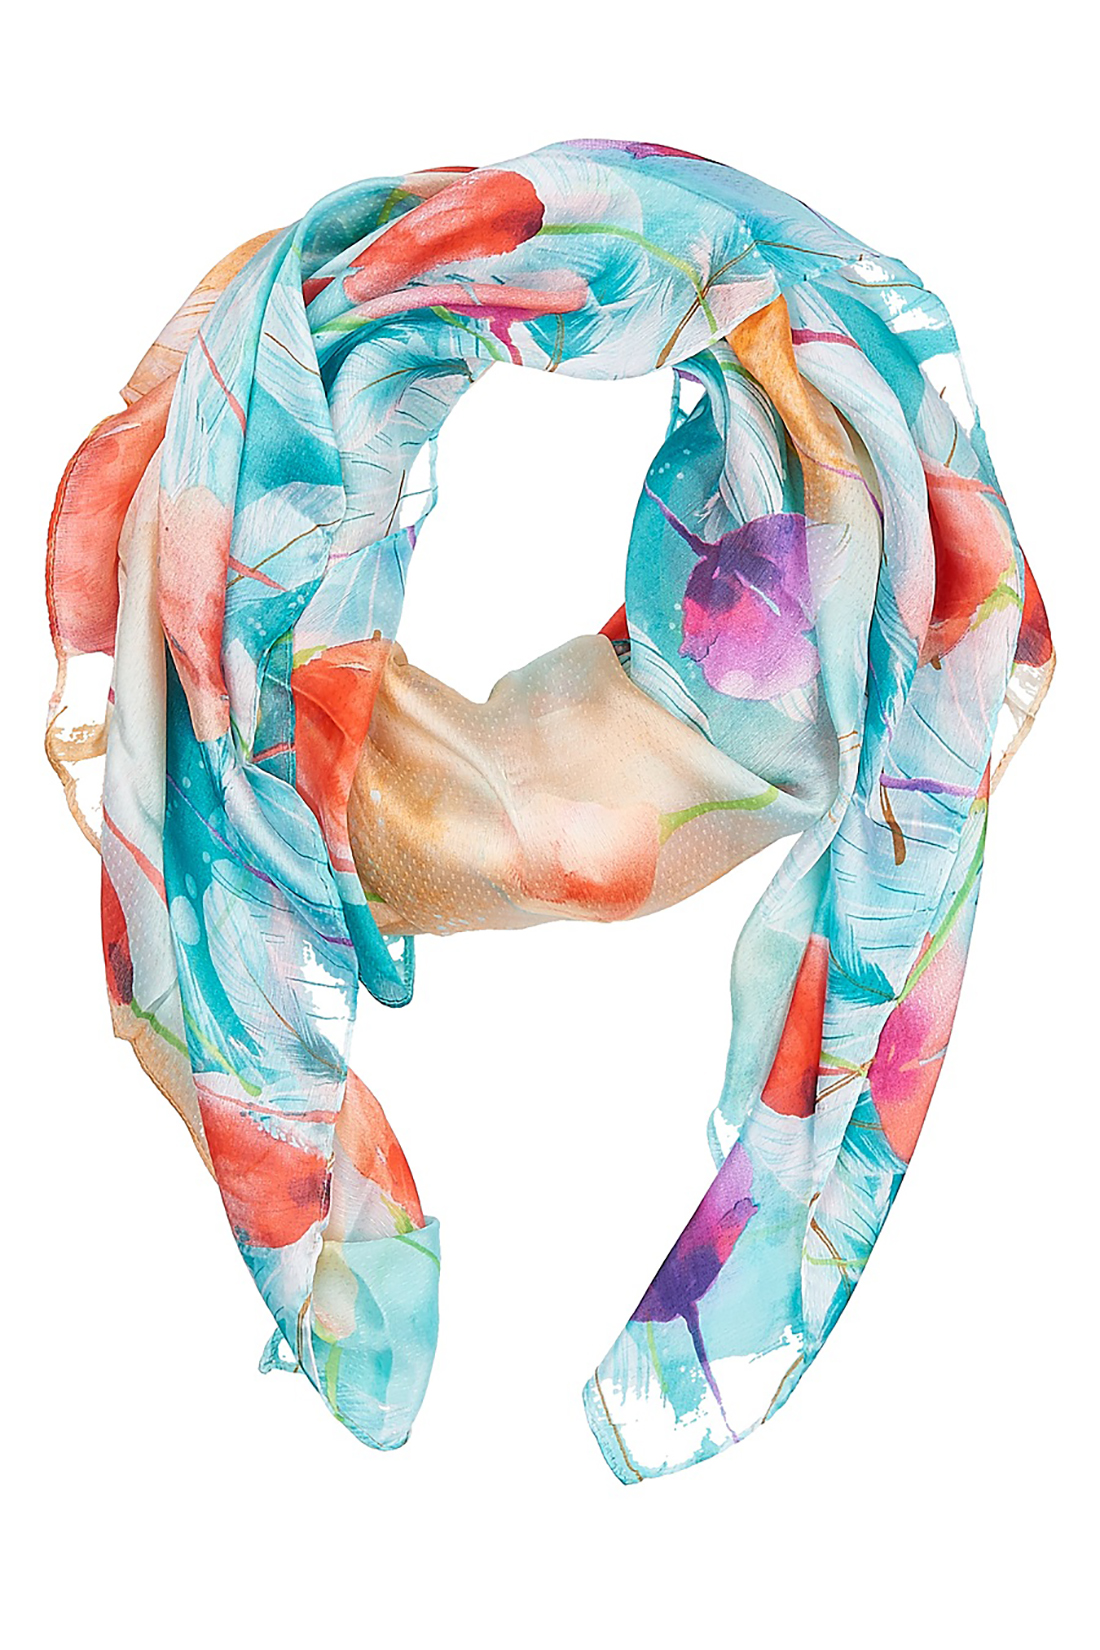 Шёлковый шарф с тюльпанами (арт. baon B358050), размер Без/раз, цвет multicolor#многоцветный Шёлковый шарф с тюльпанами (арт. baon B358050) - фото 1